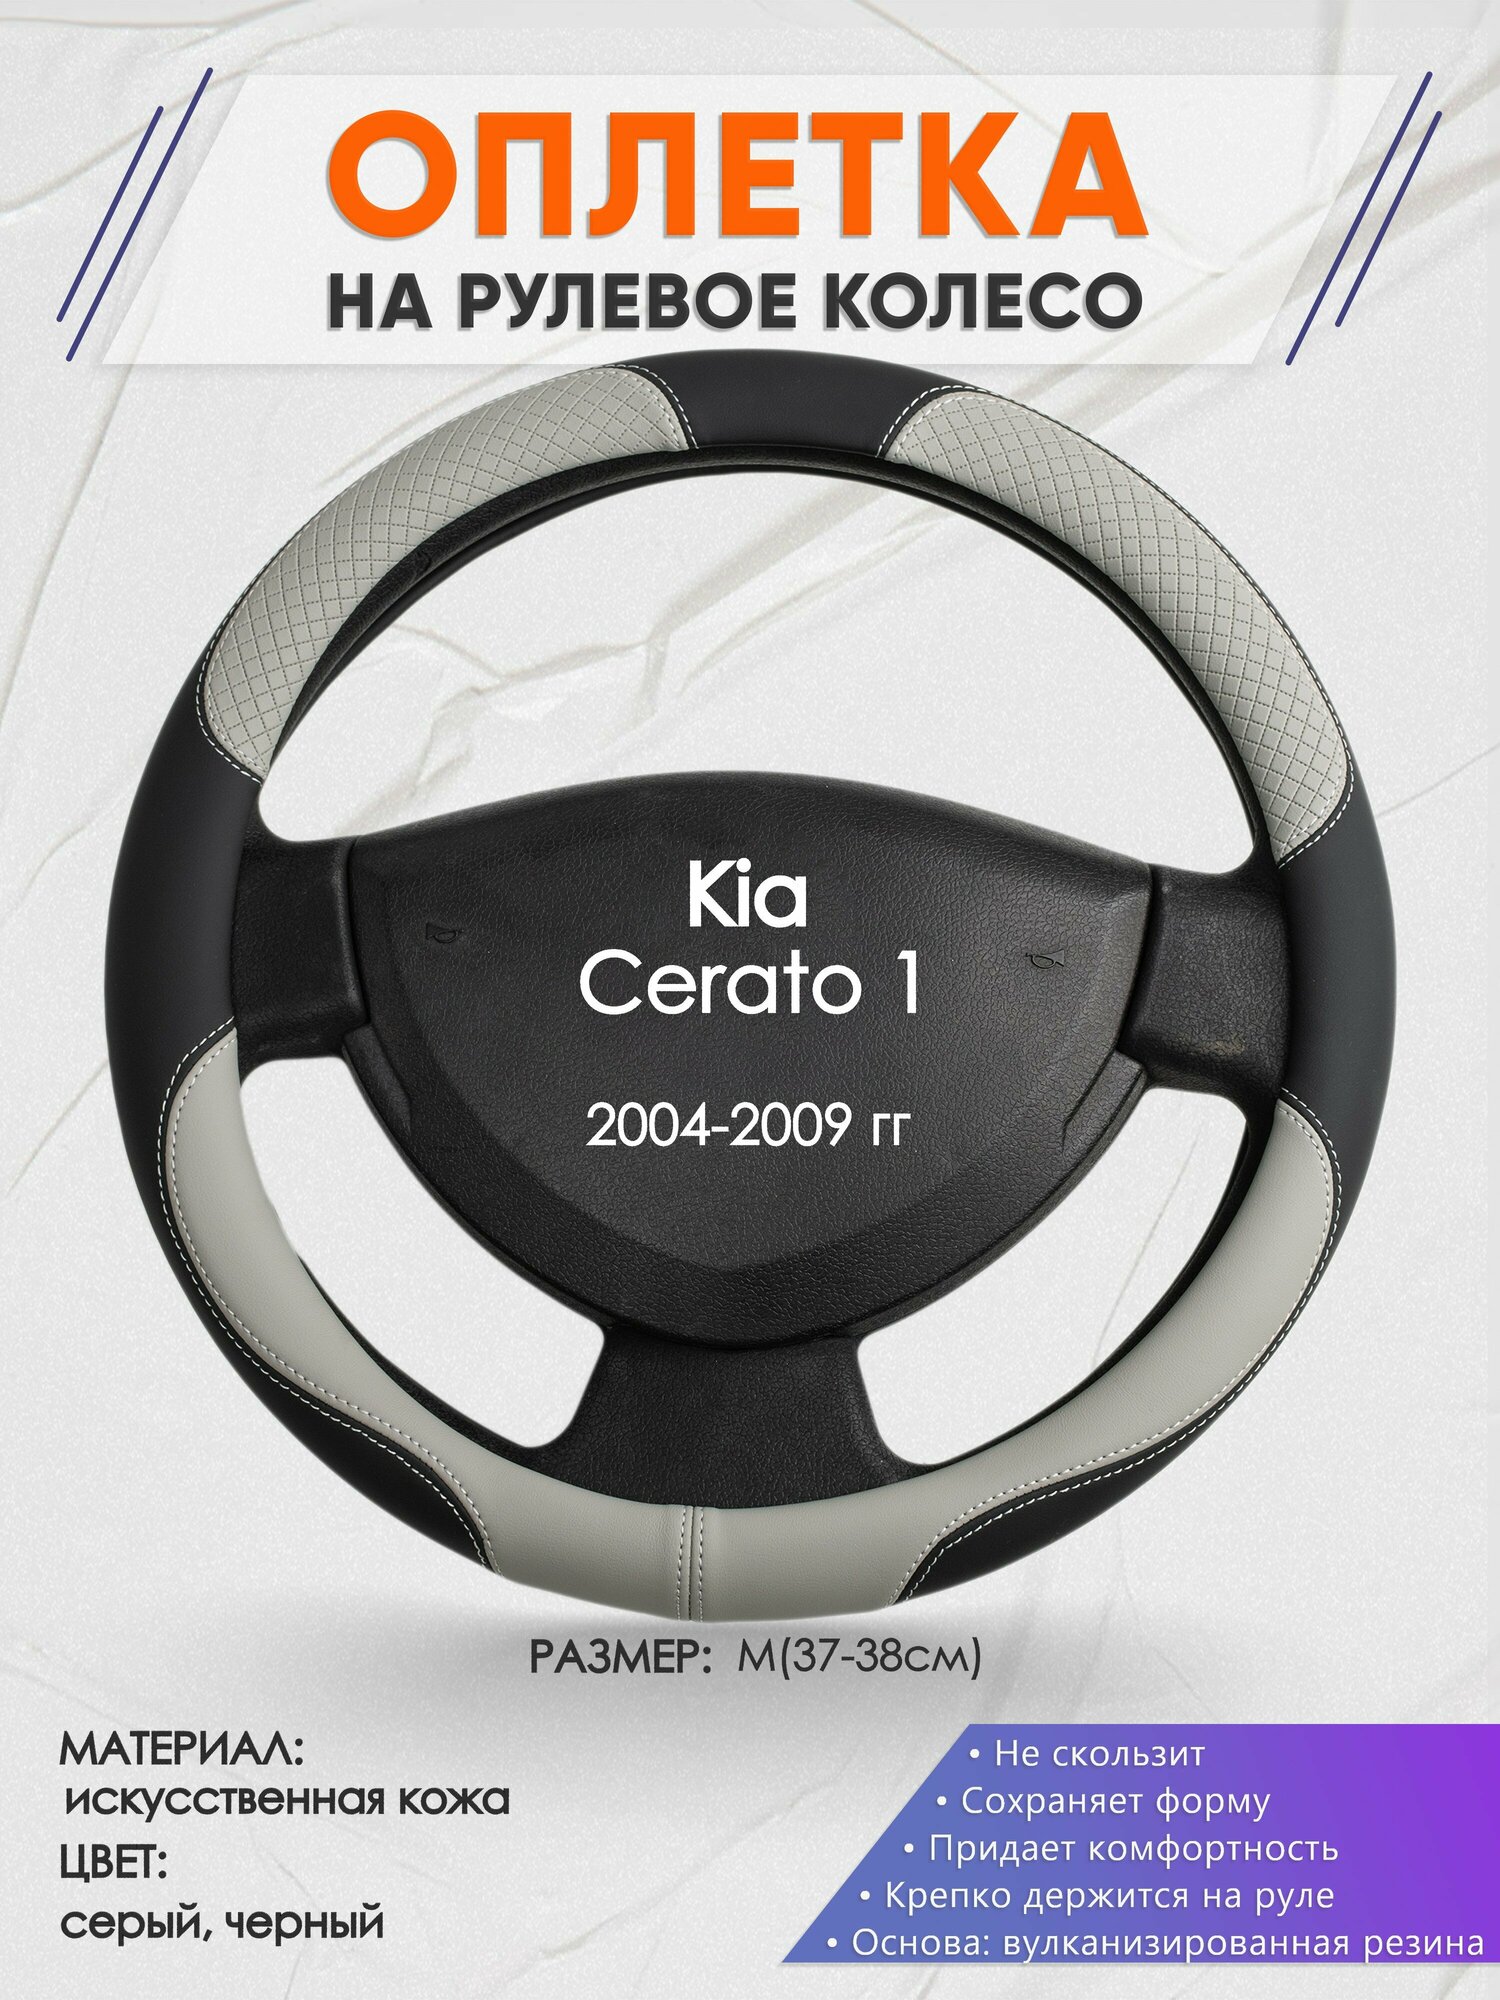 Оплетка на руль для Kia Cerato 1(Киа Церато 1 поколения) 2004-2009, M(37-38см), Искусственная кожа 60